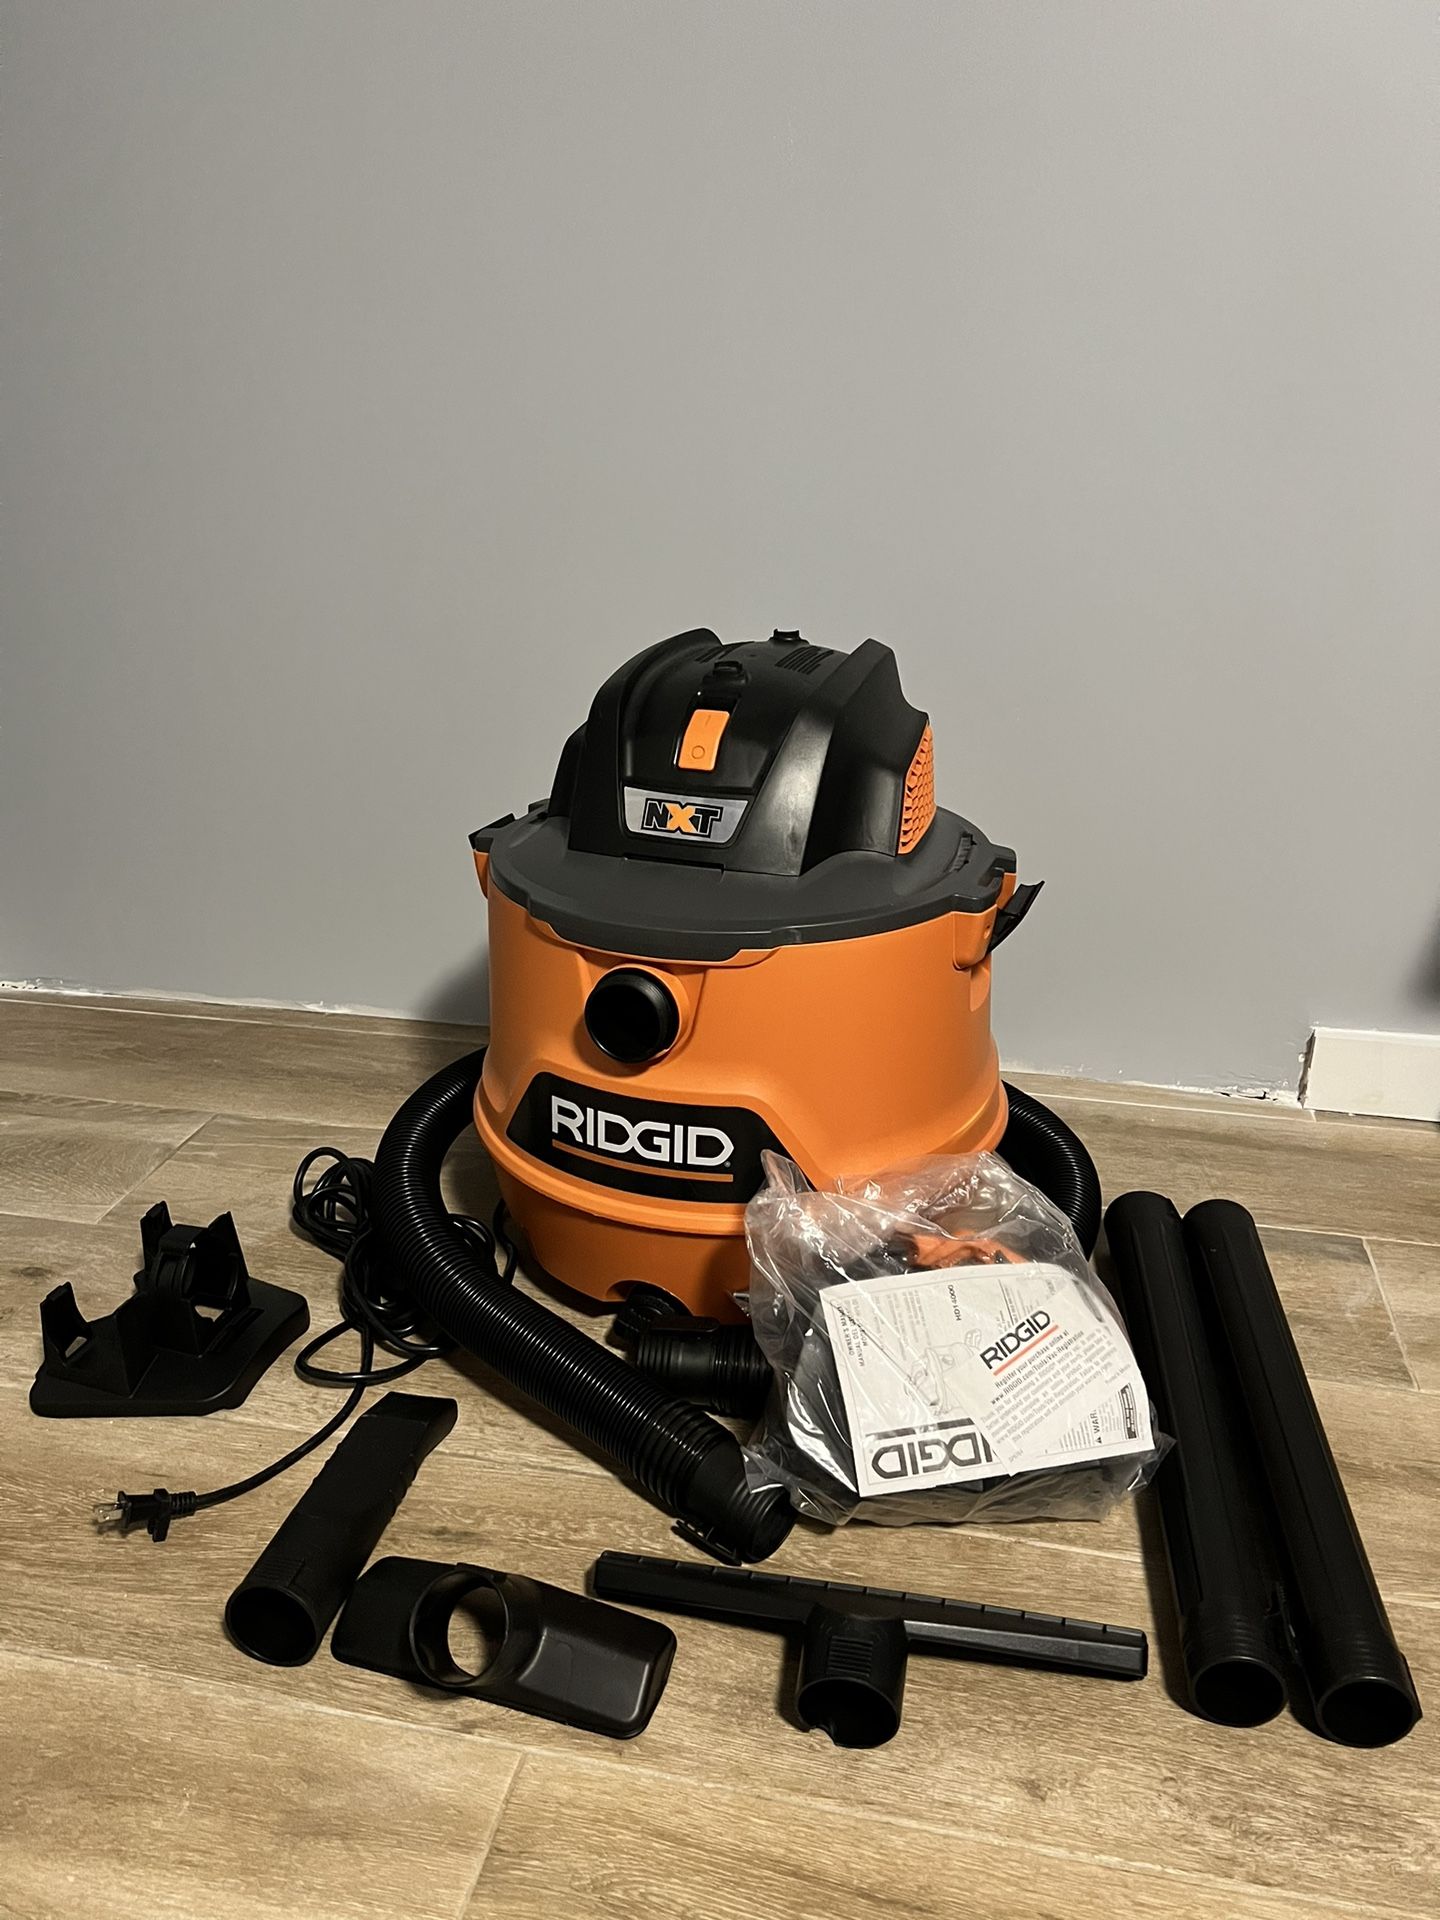 Rigid HD1200 Wet/Dry Vacuum